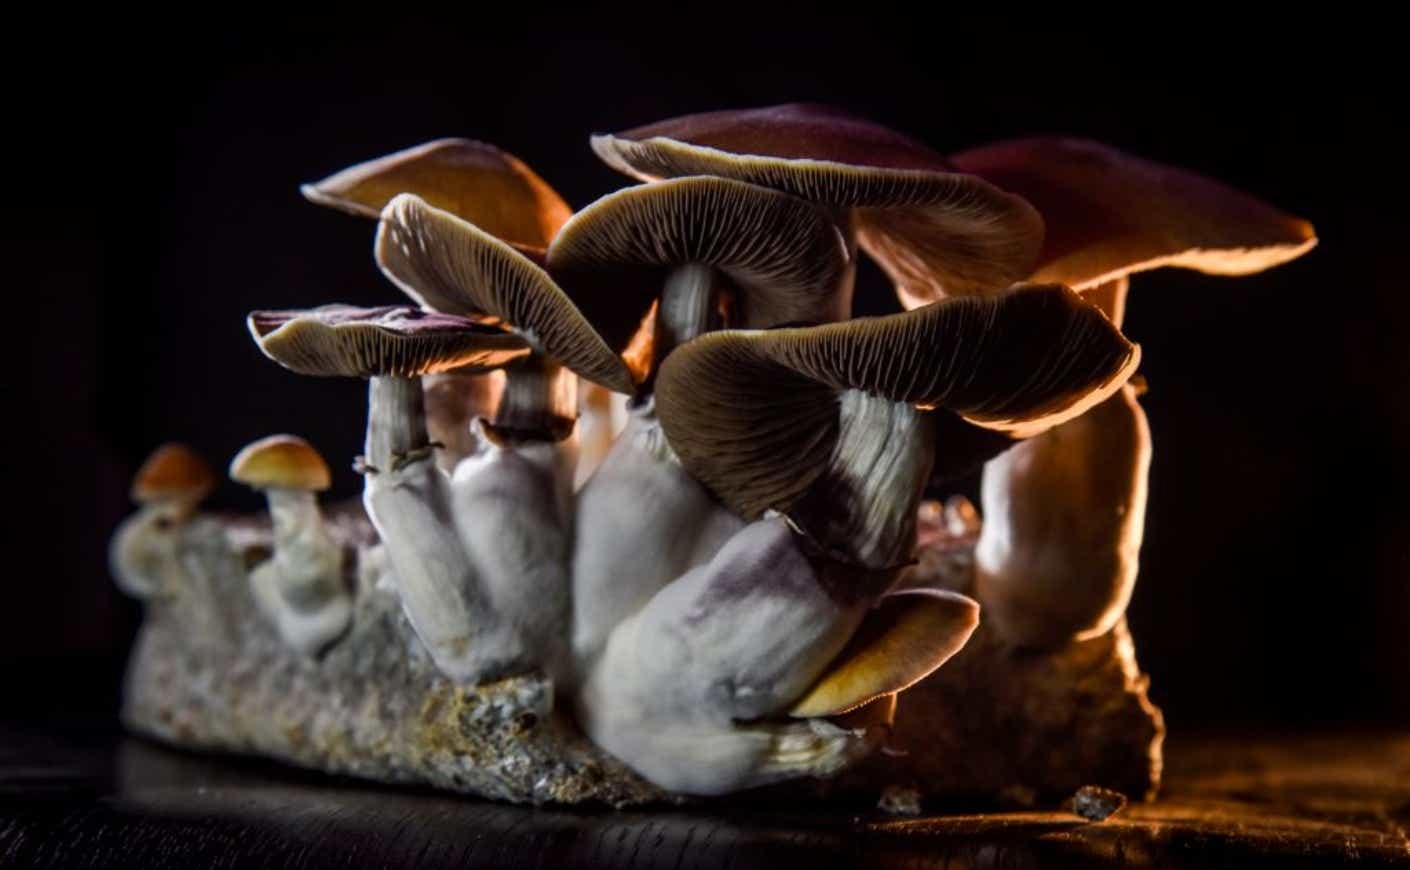 magic mushrooms in a cluster